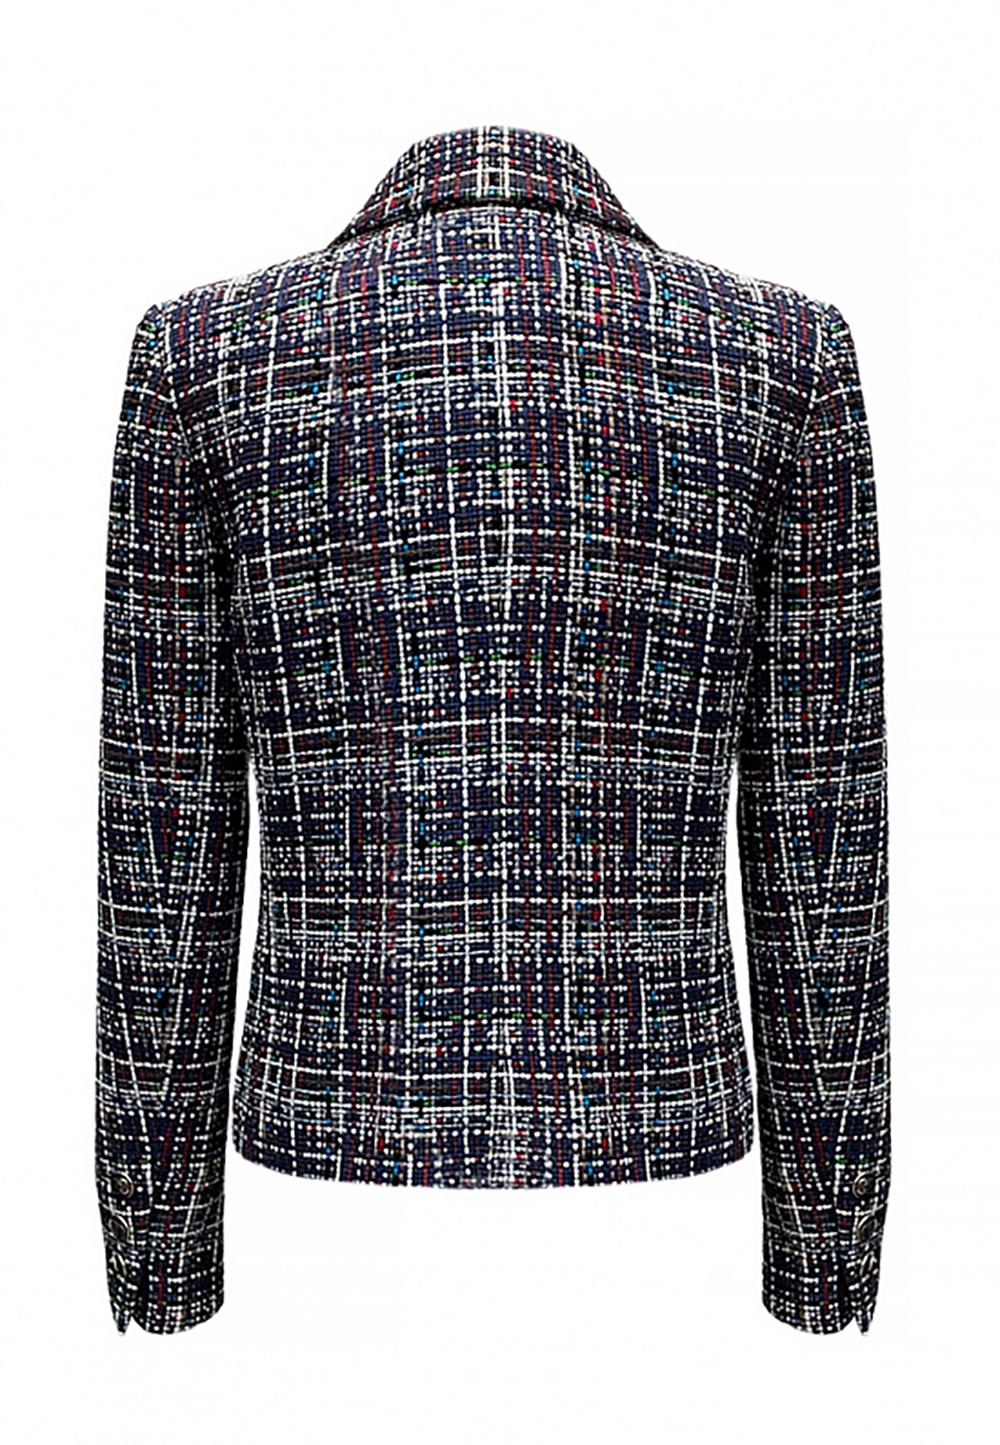 Chanel Kate Middleton Style Ribbon Tweed Jacket 5